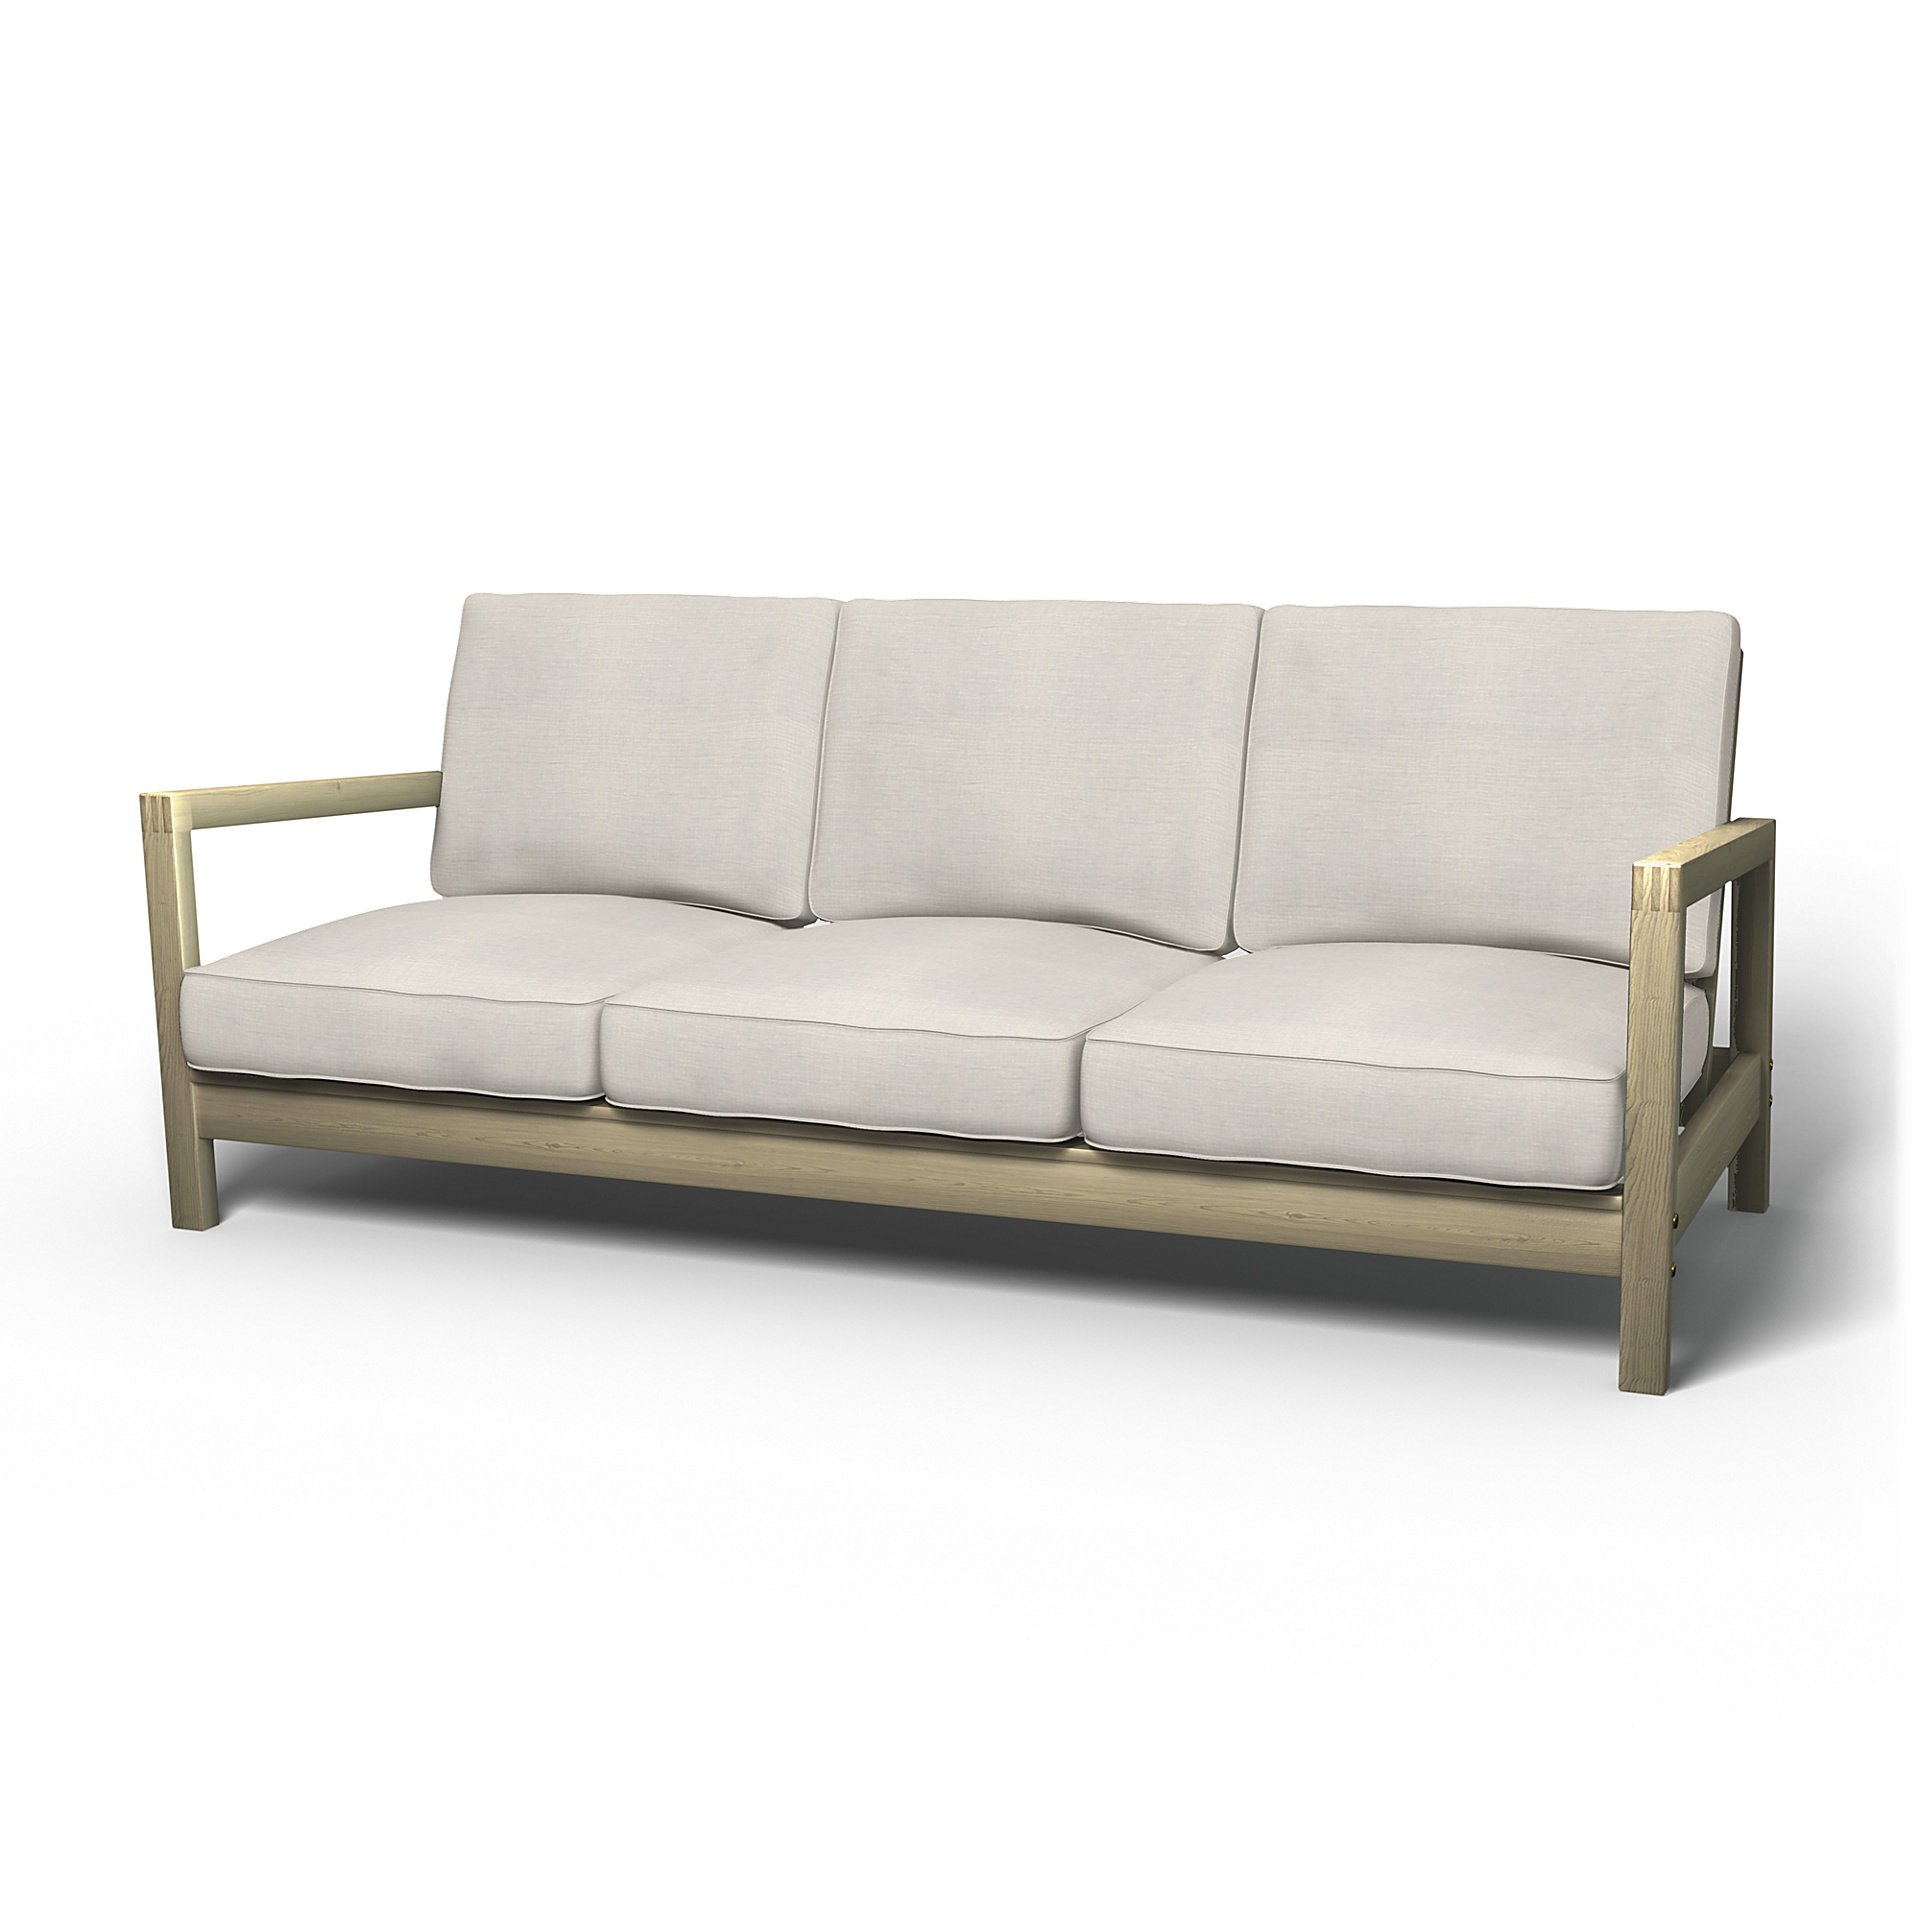 IKEA - Lillberg 3 Seater Sofa Cover, Soft White, Linen - Bemz